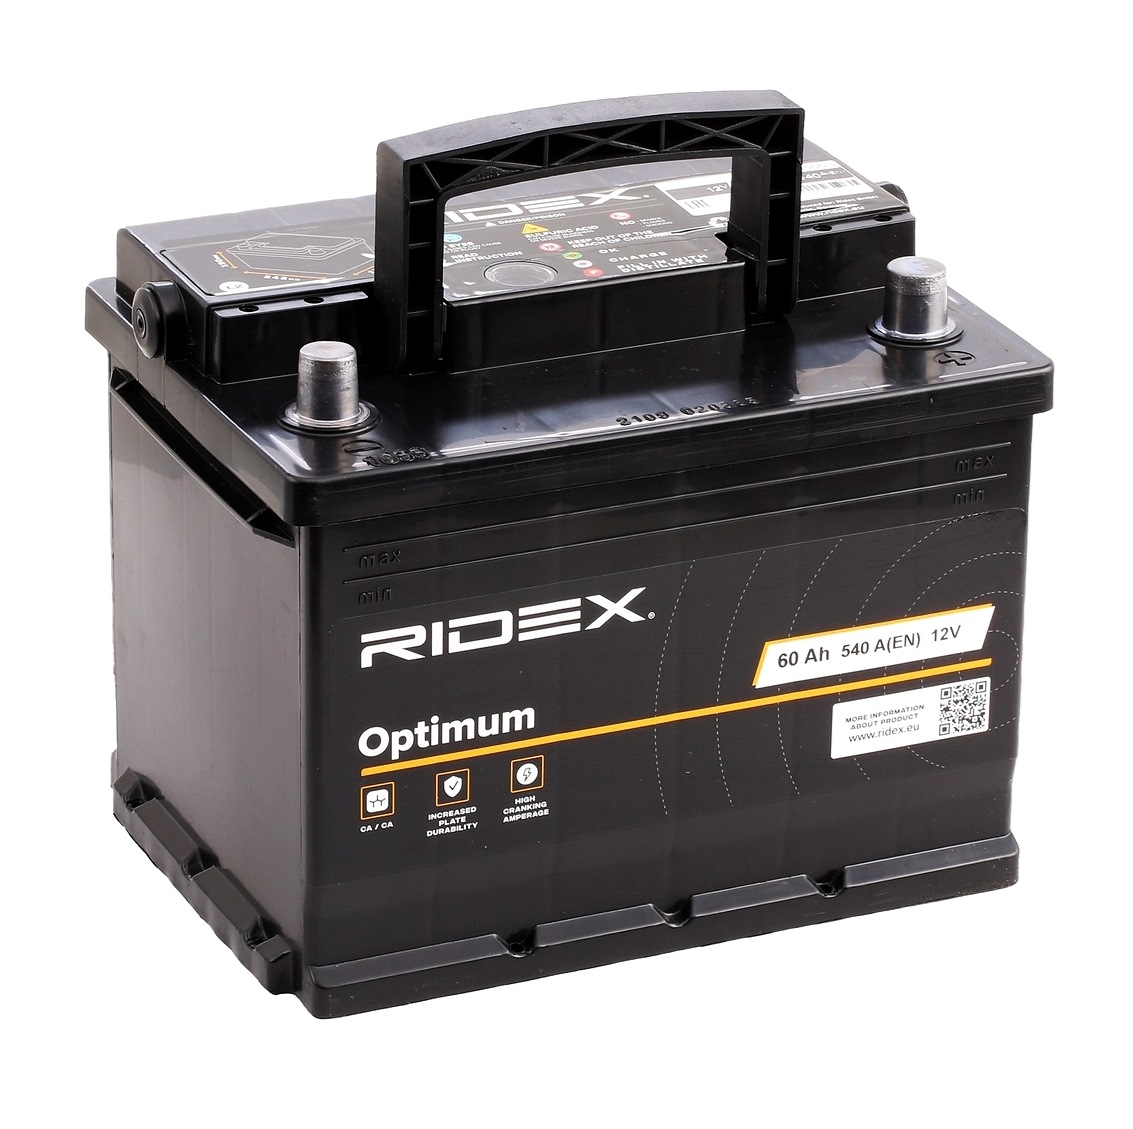 RIDEX OPTIMUM Bateria de arranque 1S0003